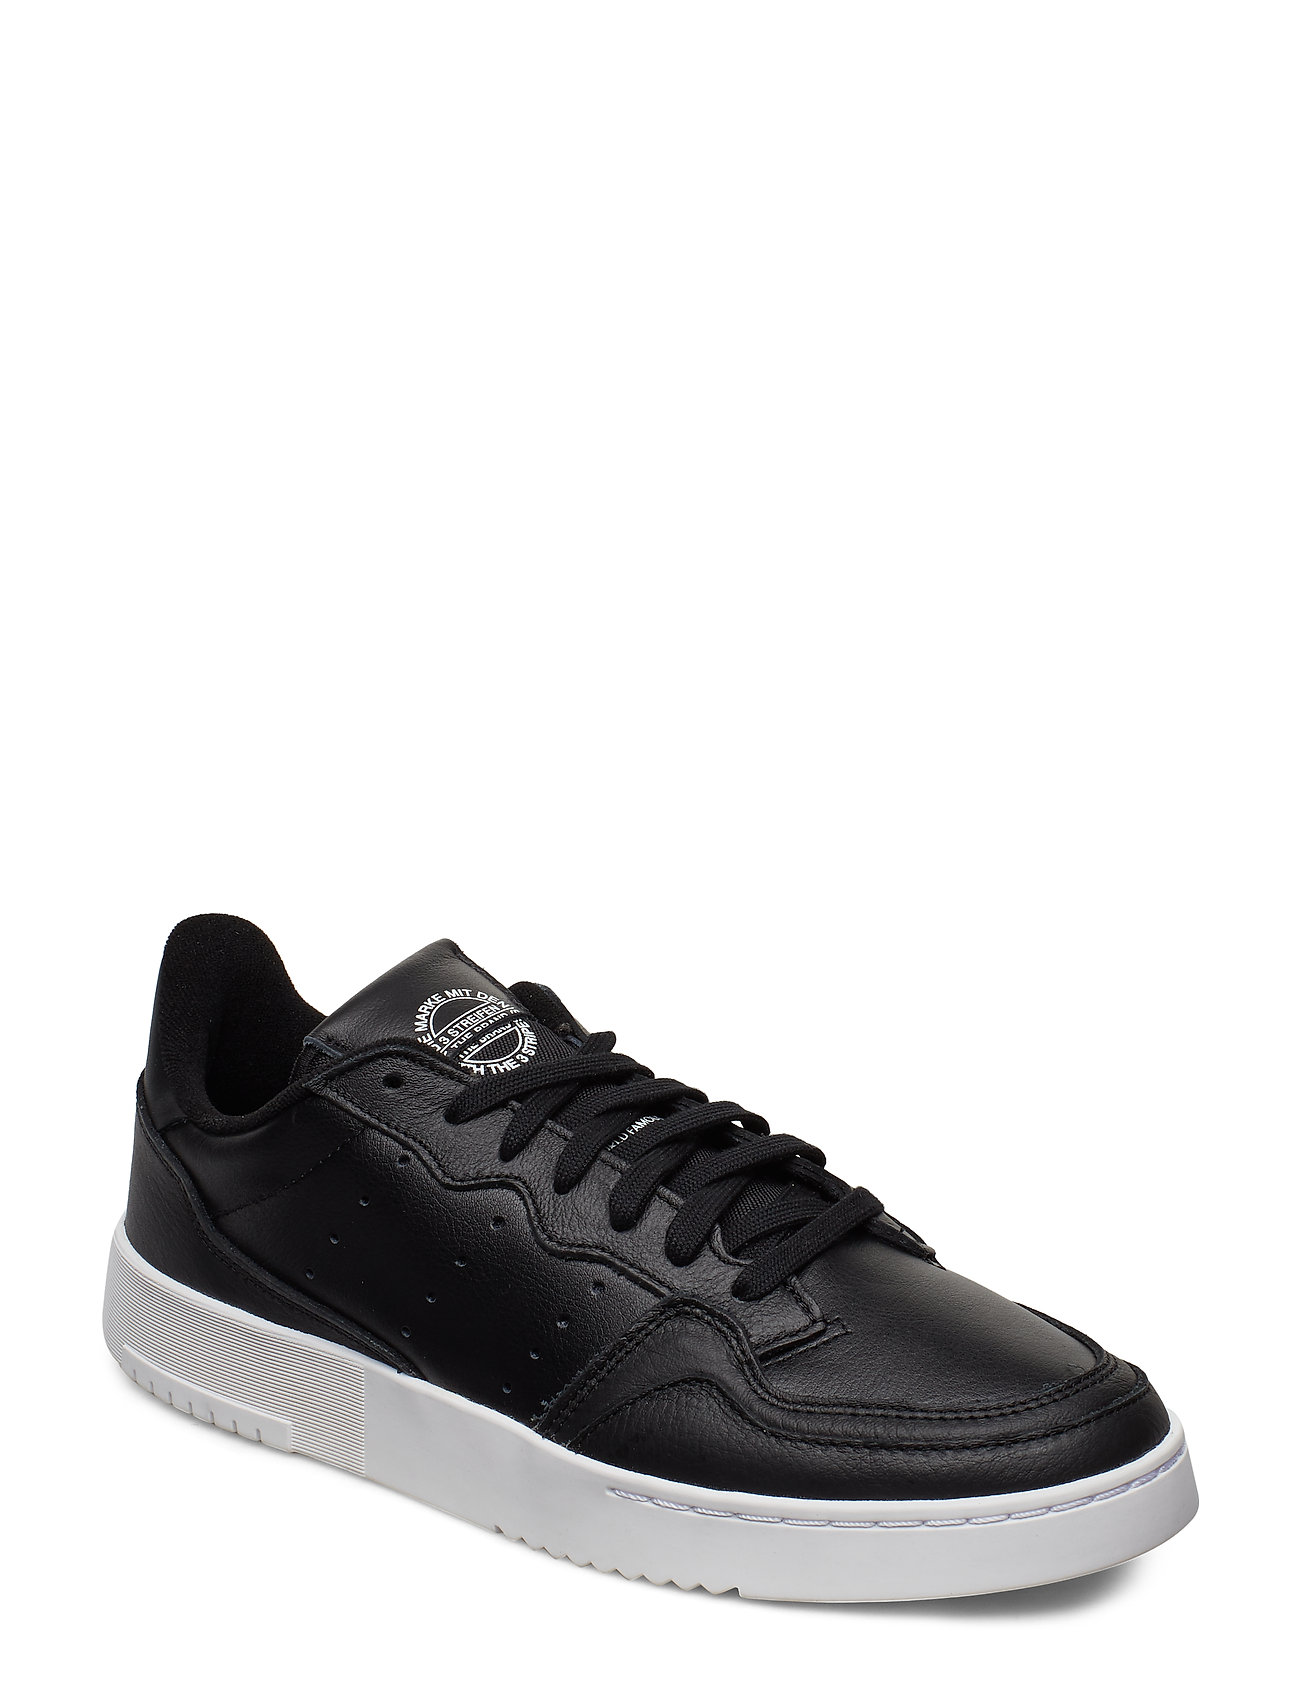 Supercourt Matalavartiset Sneakerit Tennarit Musta Adidas Originals, adidas Originals